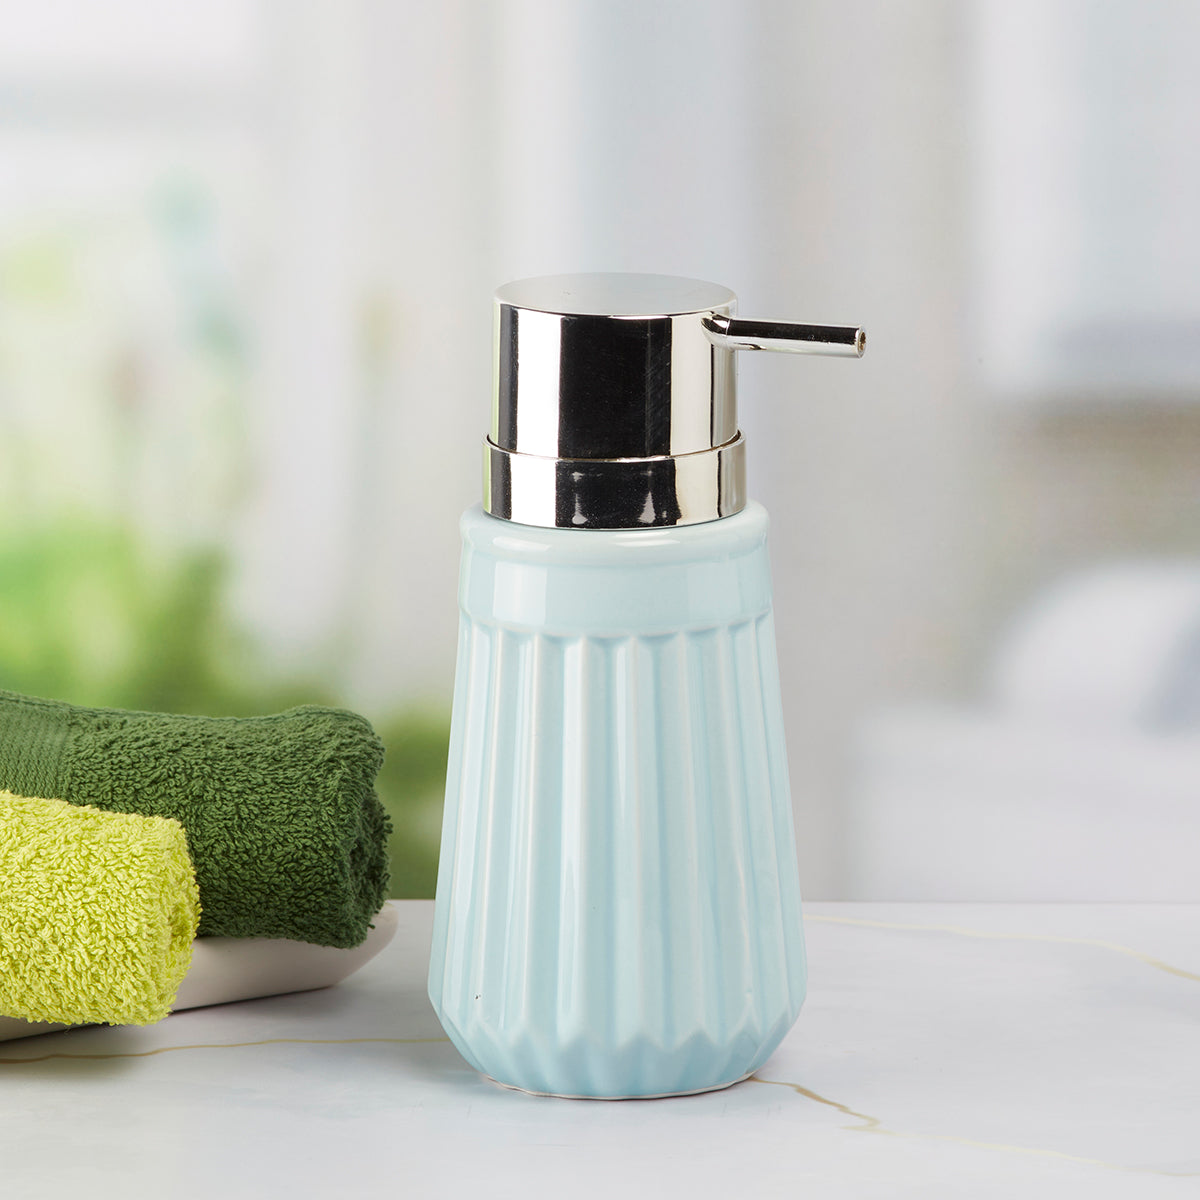 Kookee Ceramic Soap Dispenser for Bathroom handwash, refillable pump bottle for Kitchen hand wash basin, Set of 1, Blue (7980)